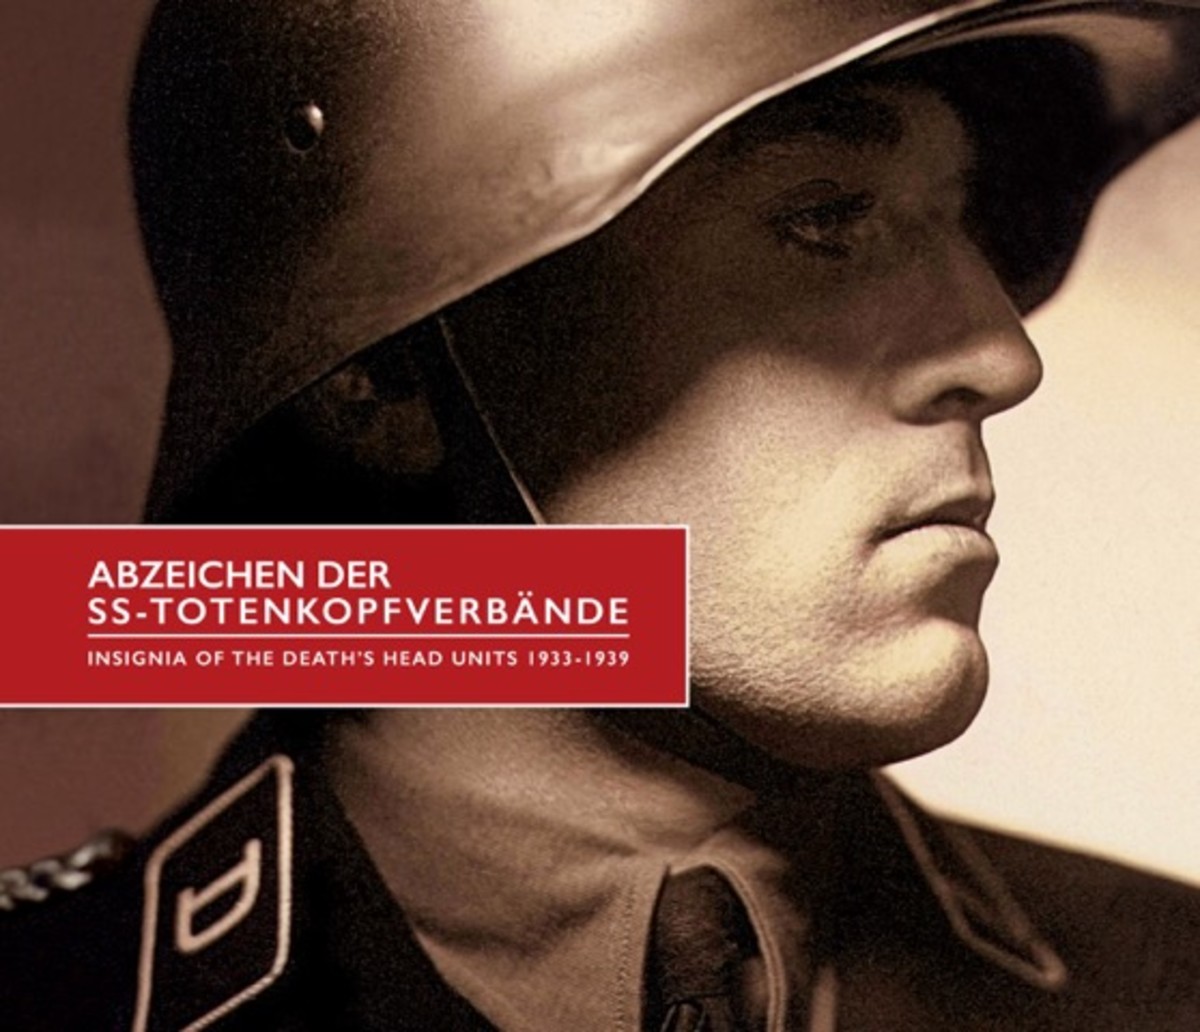 Abzeichen der SS-Totenkopfverbände – Insignia of the Death’s-Head Units 1933-1939, by Derek Chapman,